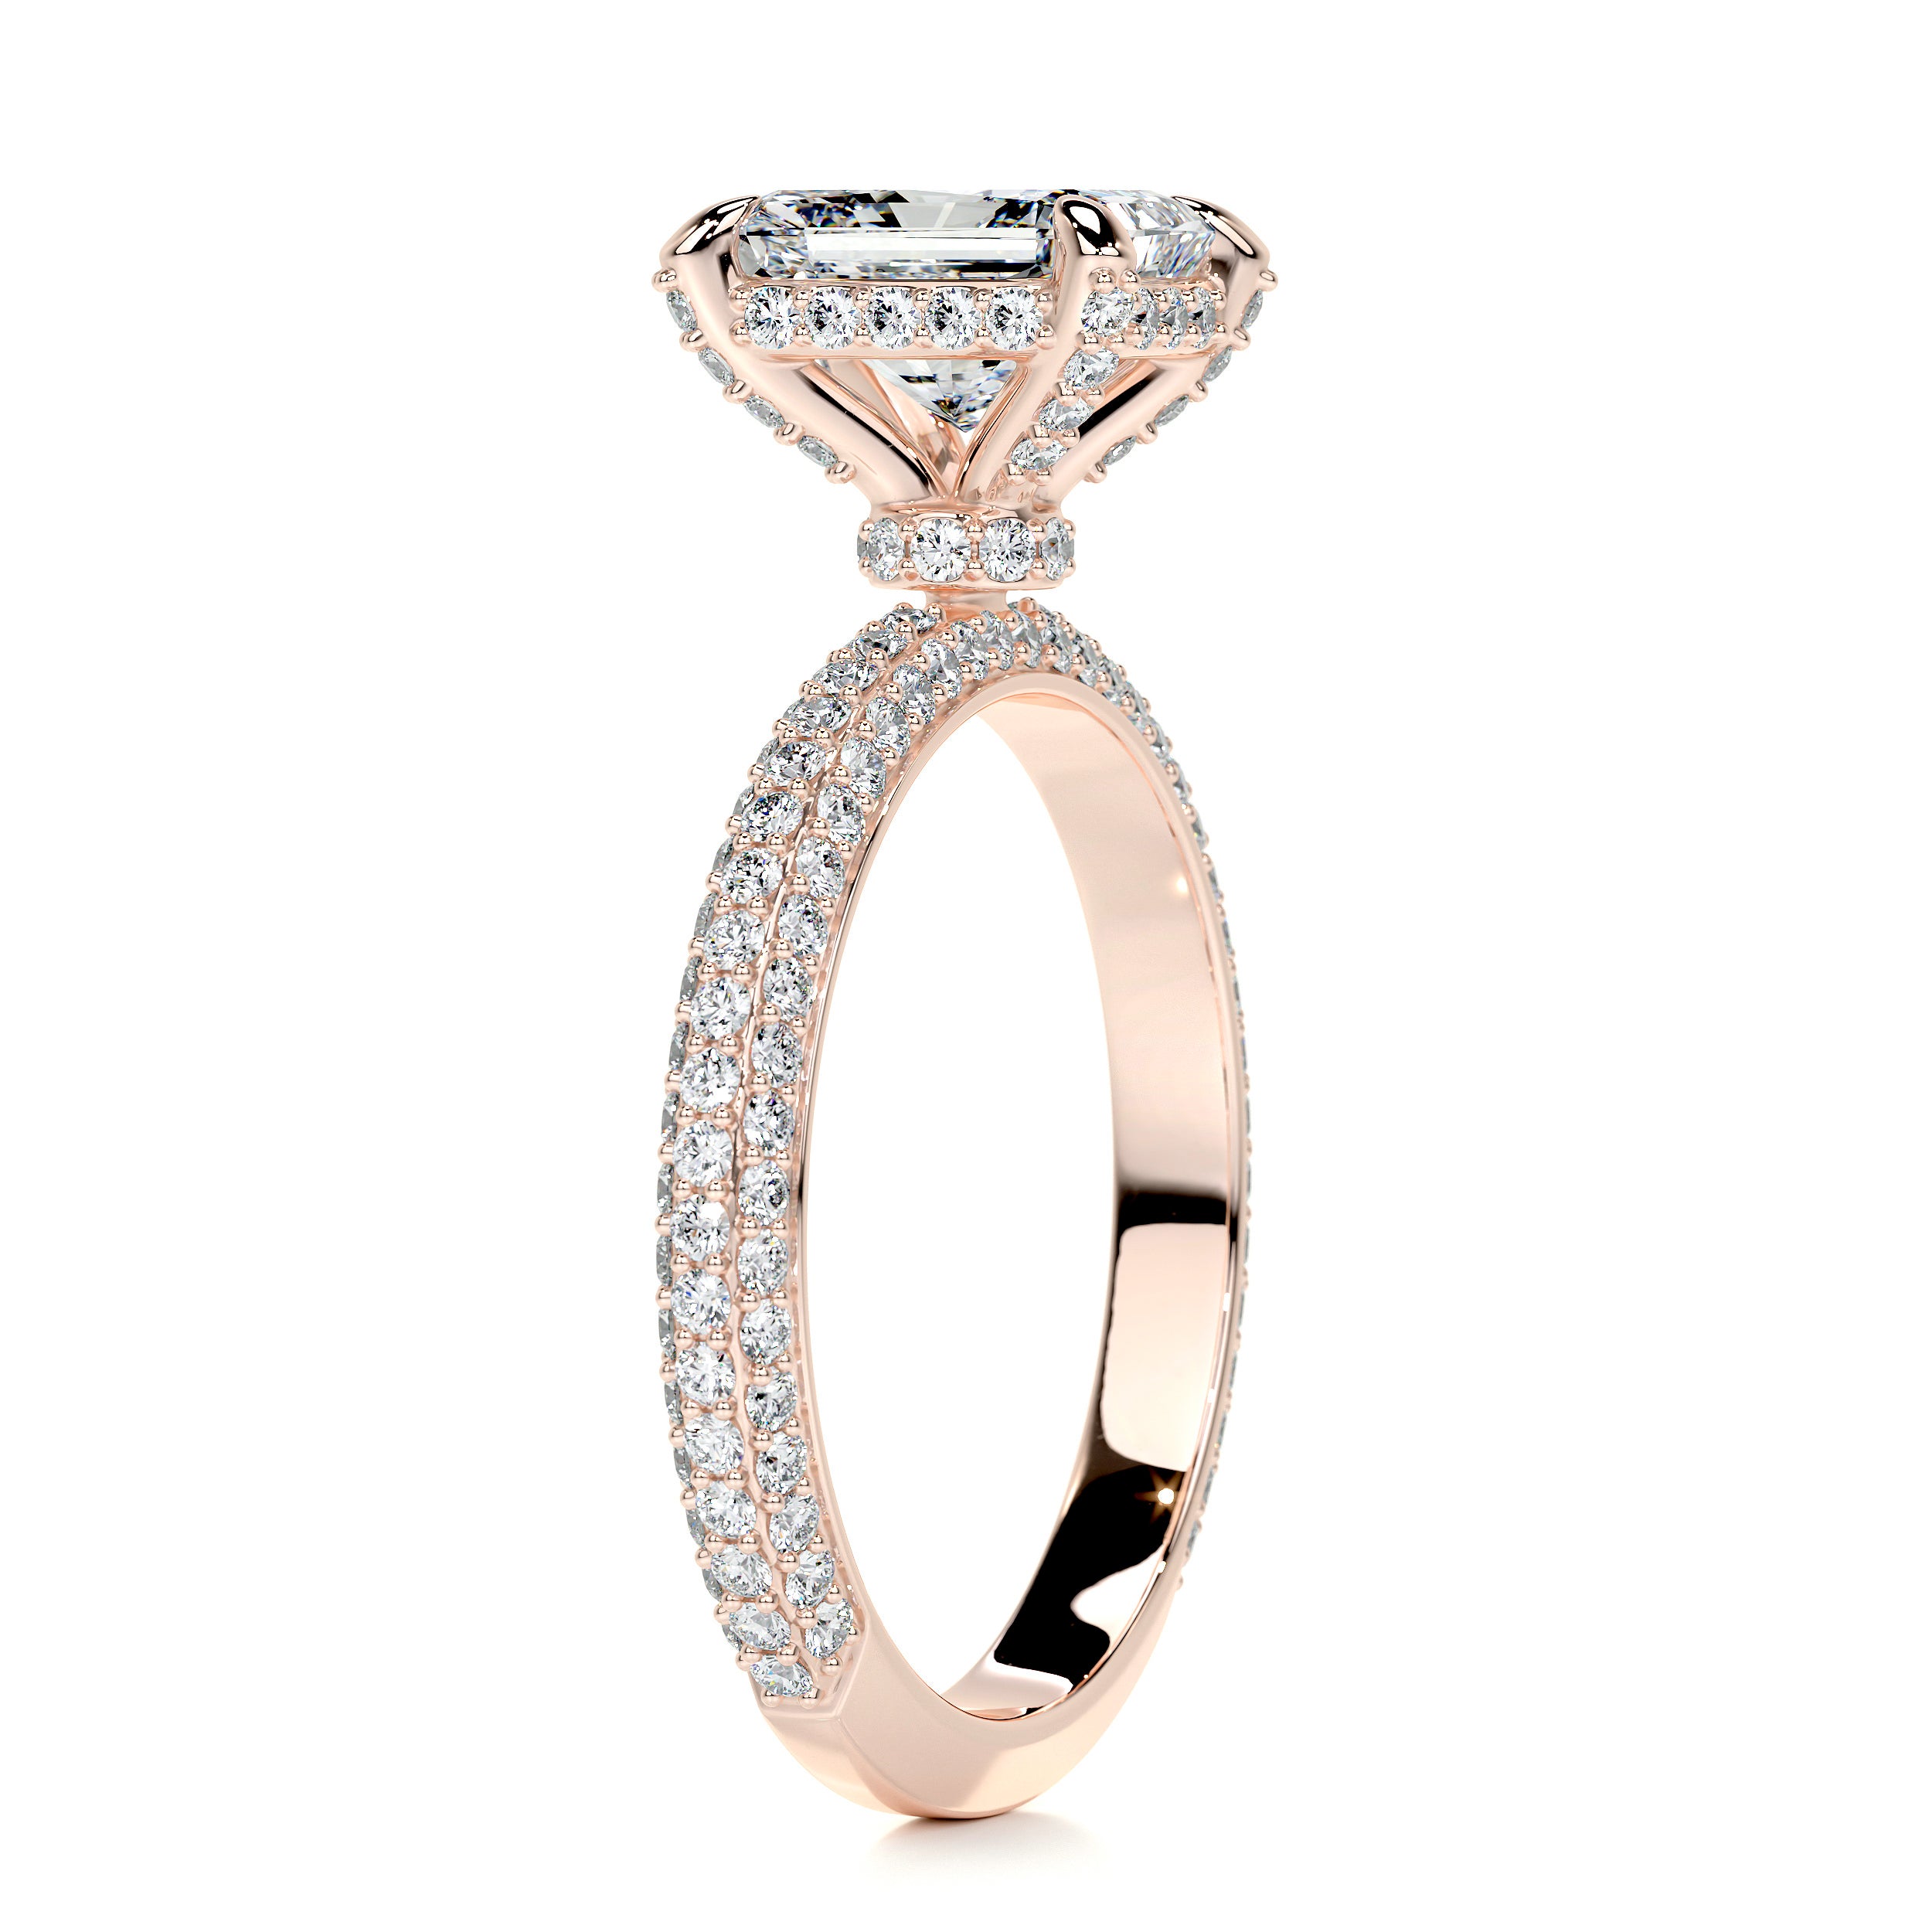 Milly Diamond Engagement Ring   (2.25 Carat) -14K Rose Gold